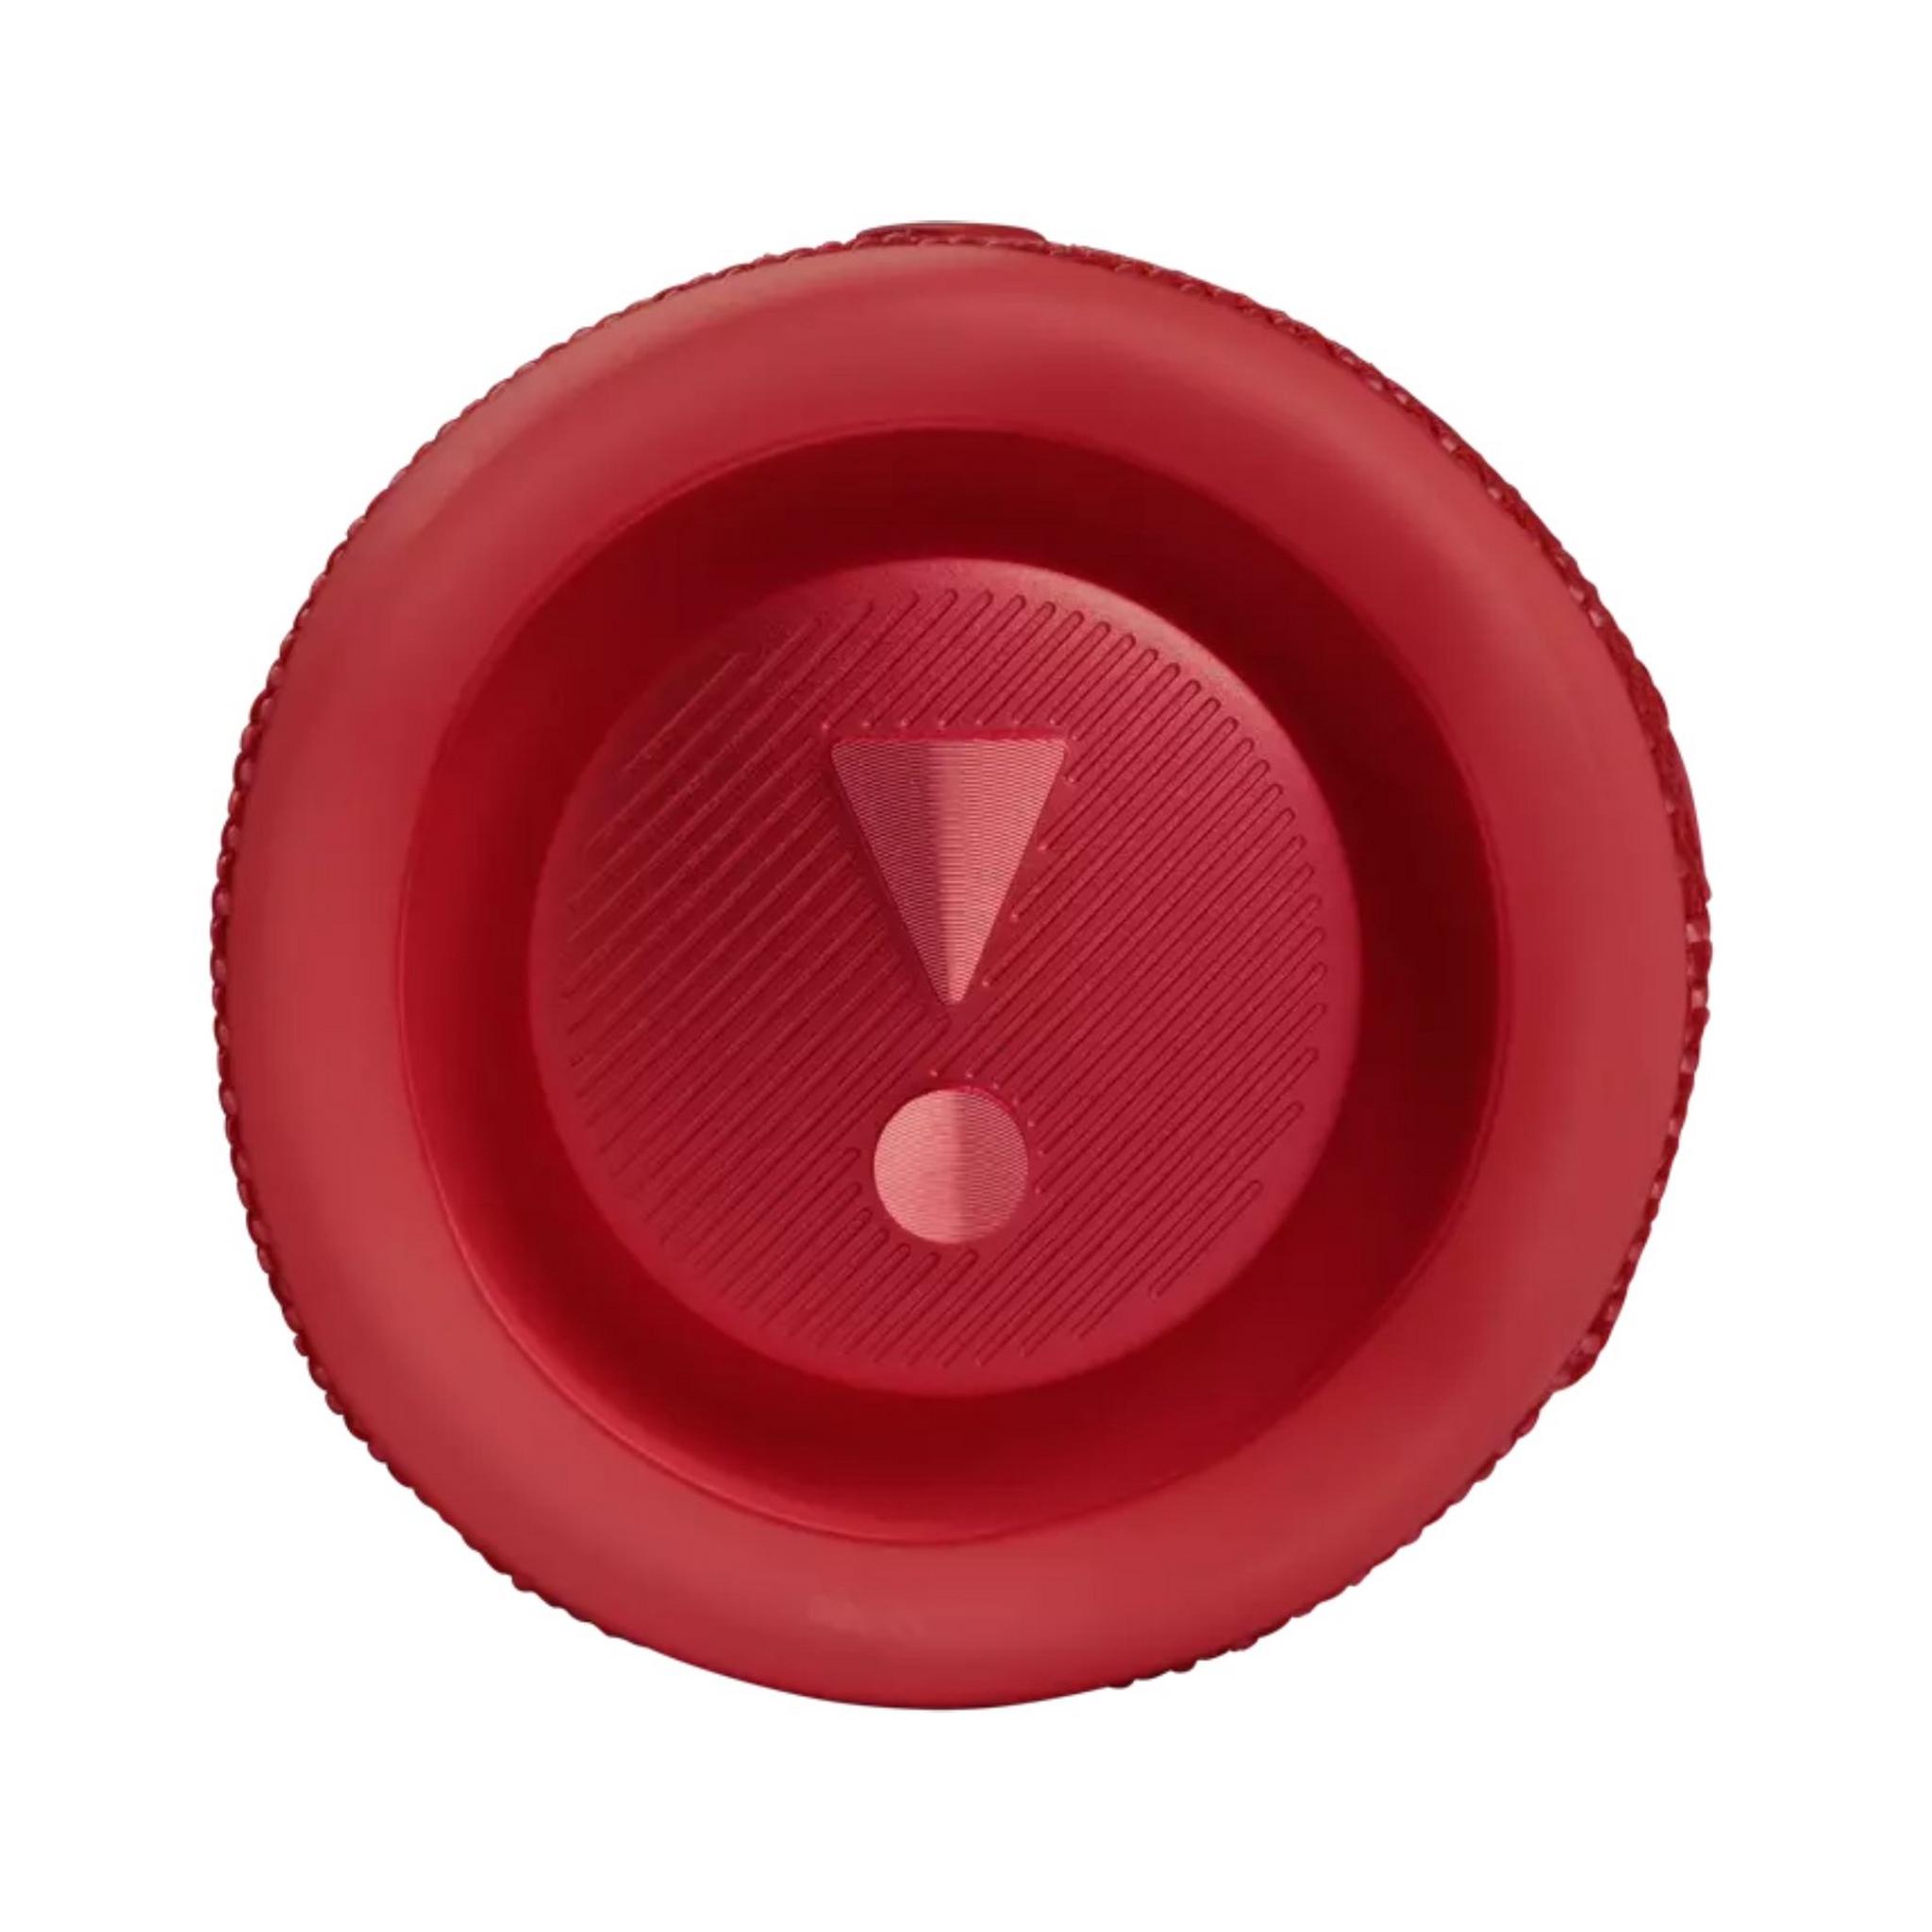 مكبر صوت محمول فليب 6 مقاوم للماء من جي بي ال - أحمر